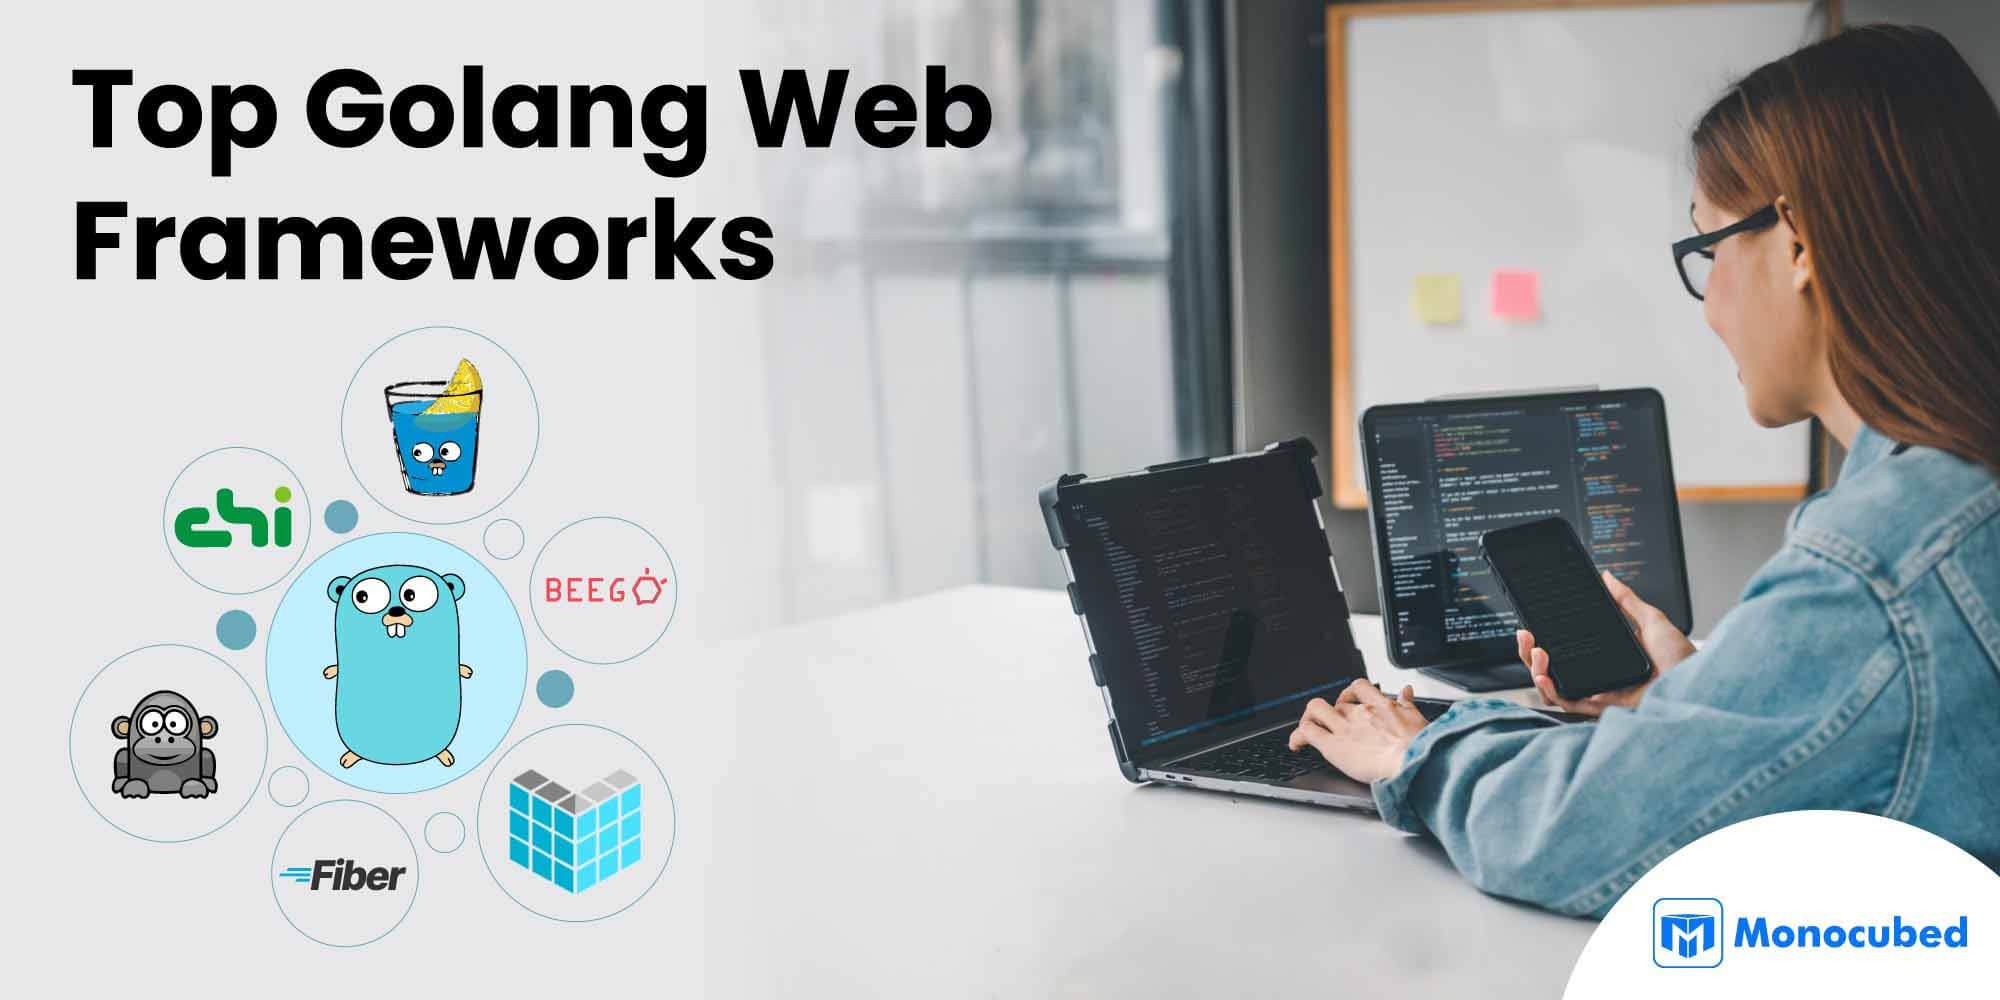 Top Golang Web Frameworks